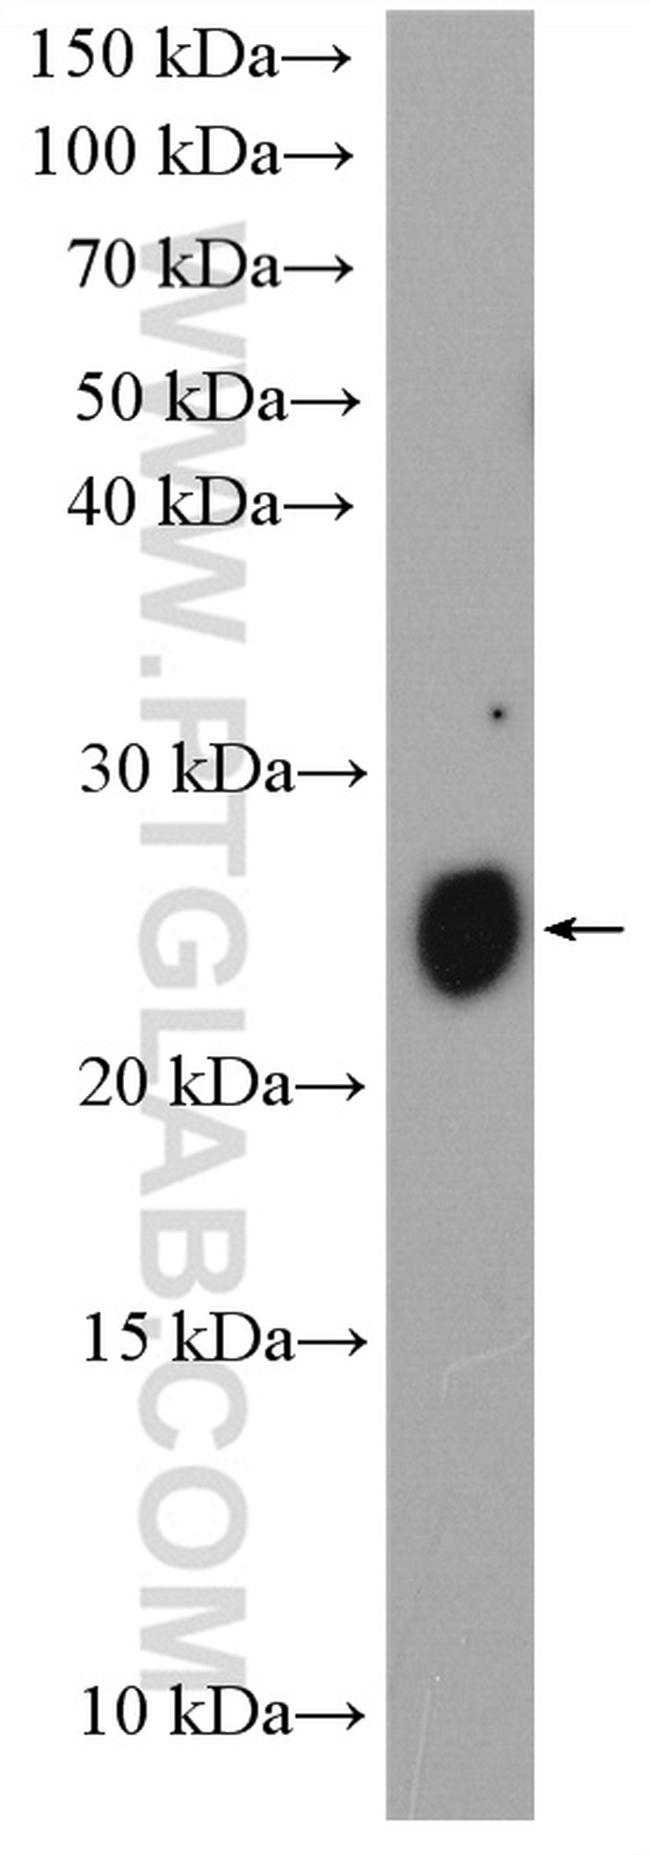 MUC1/CA15-3 Antibody in Western Blot (WB)